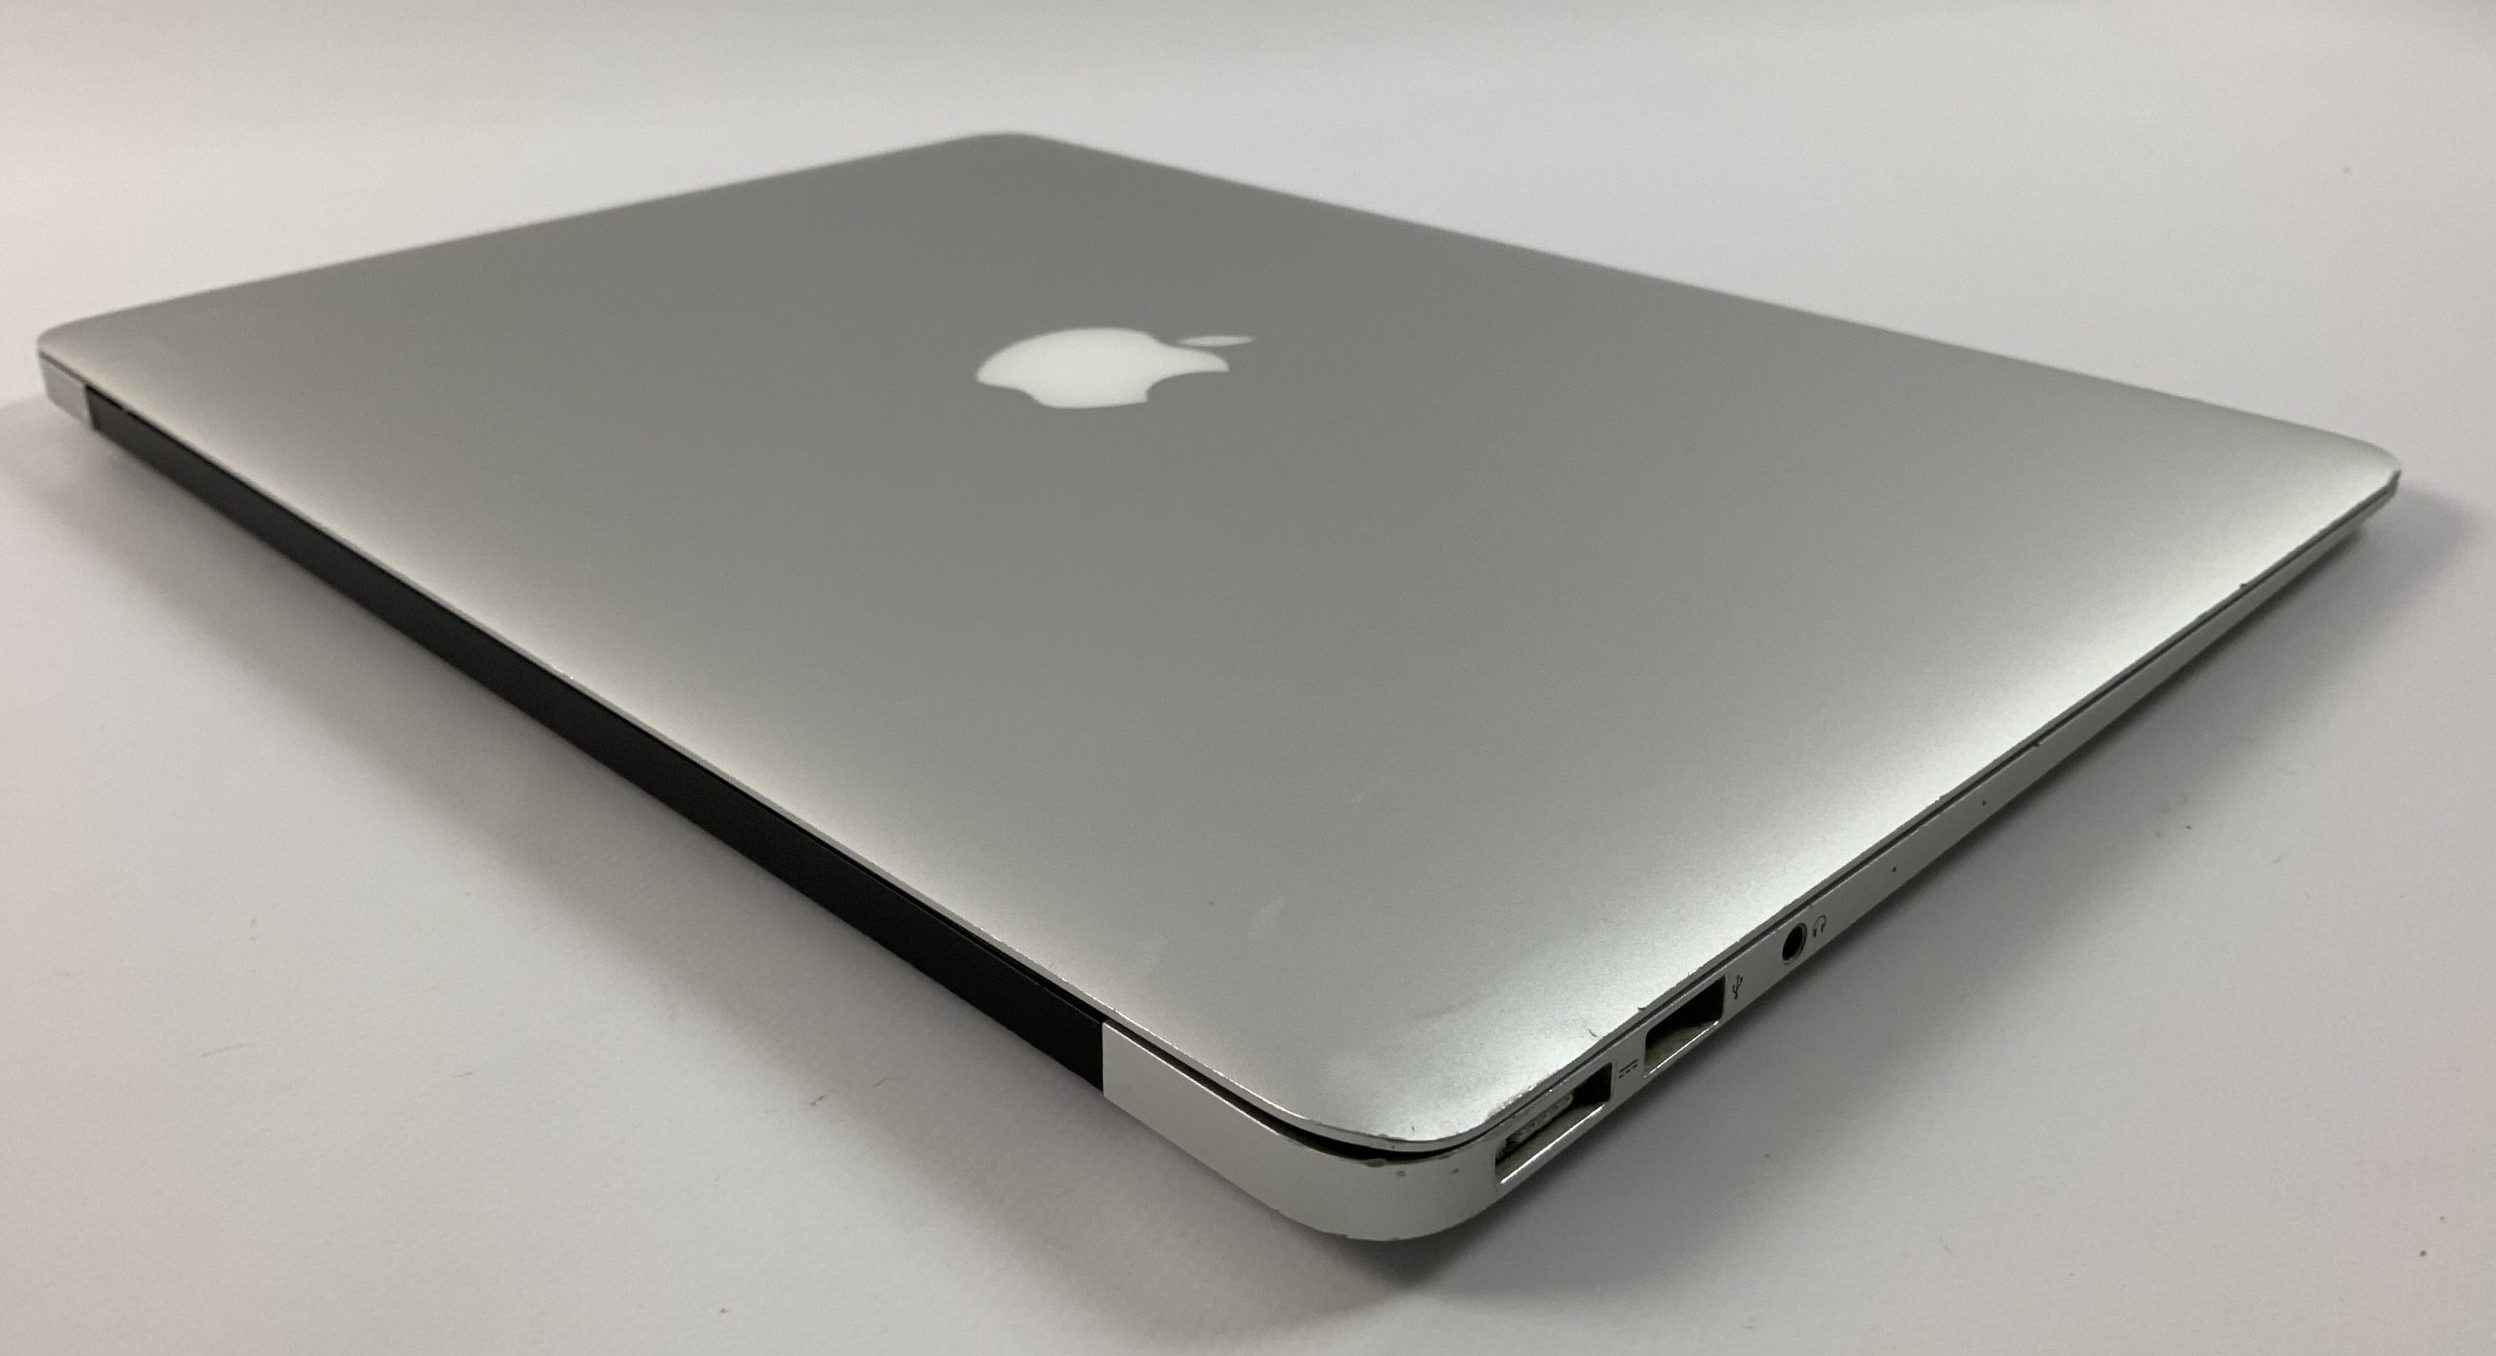 MacBook Air 13" Mid 2017 (Intel Core i5 1.8 GHz 8 GB RAM 256 GB SSD), Intel Core i5 1.8 GHz, 8 GB RAM, 256 GB SSD, imagen 4